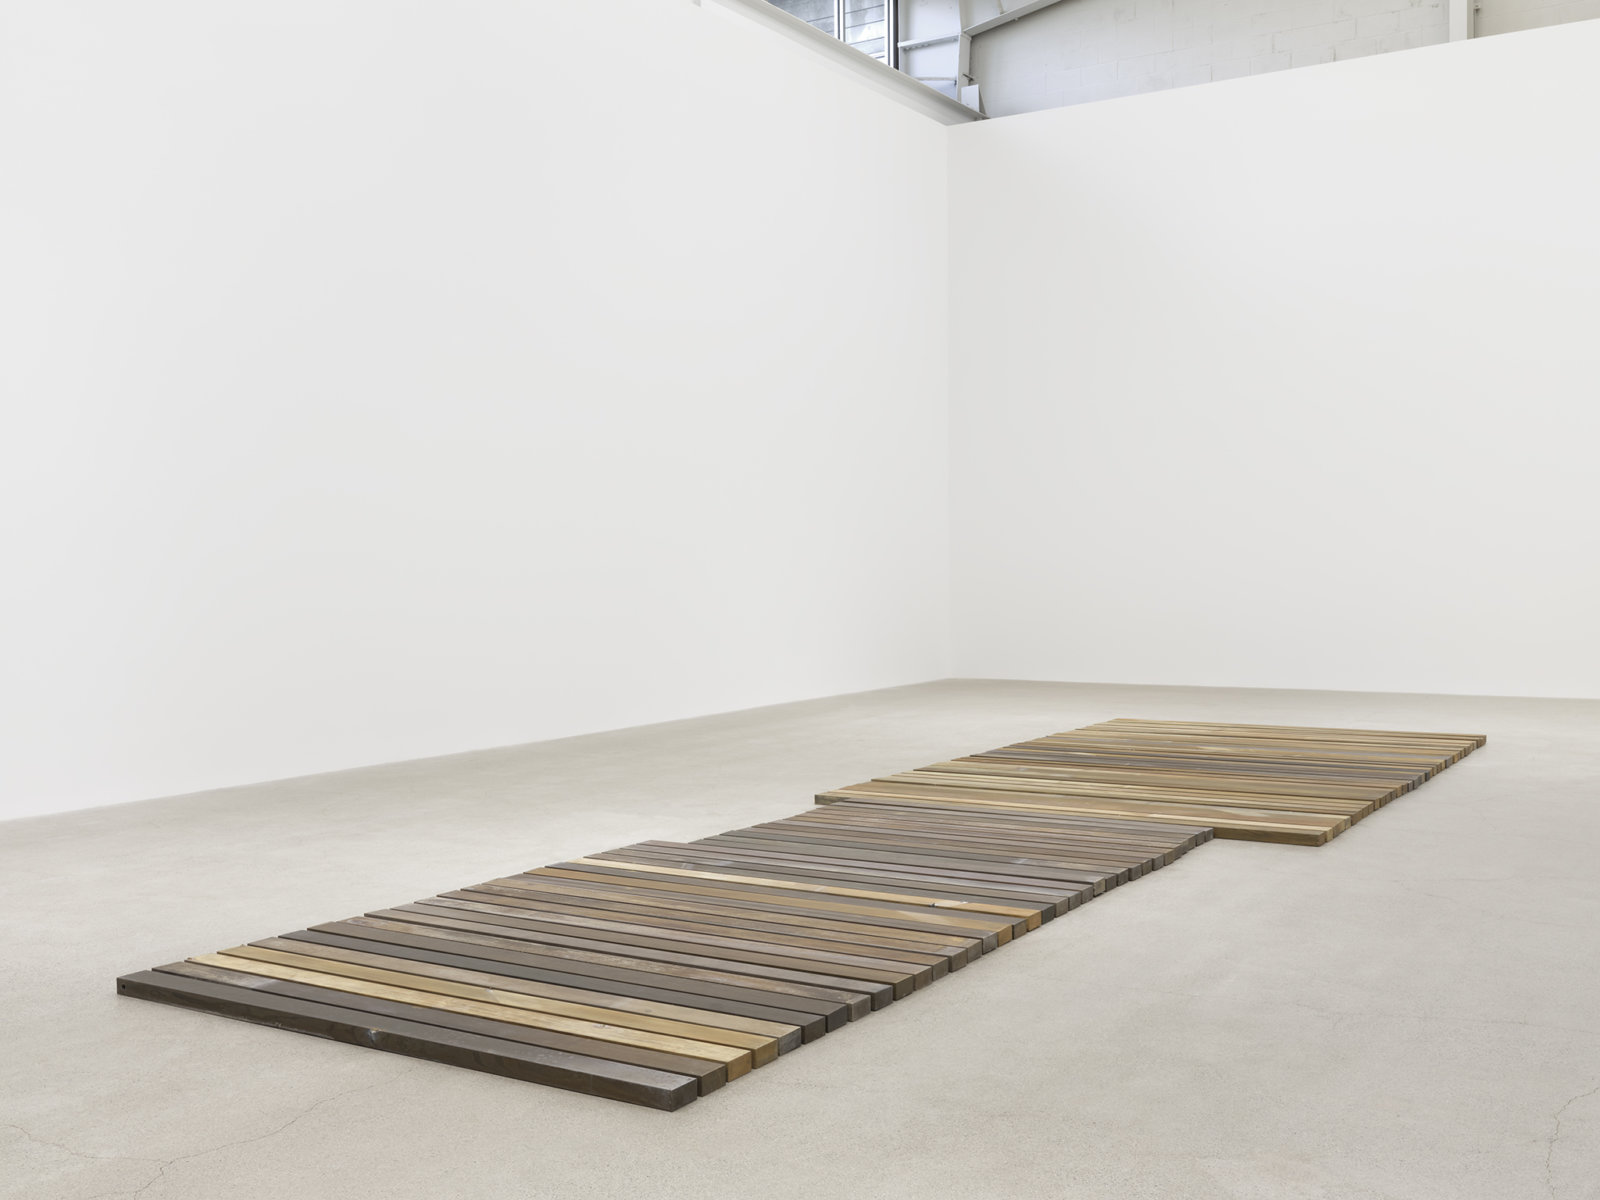 Geoffrey Farmer, 70 Planks, 2021, acid-etched brass planks, 3 x 100 x 321 in. (6 x 253 x 815 cm)